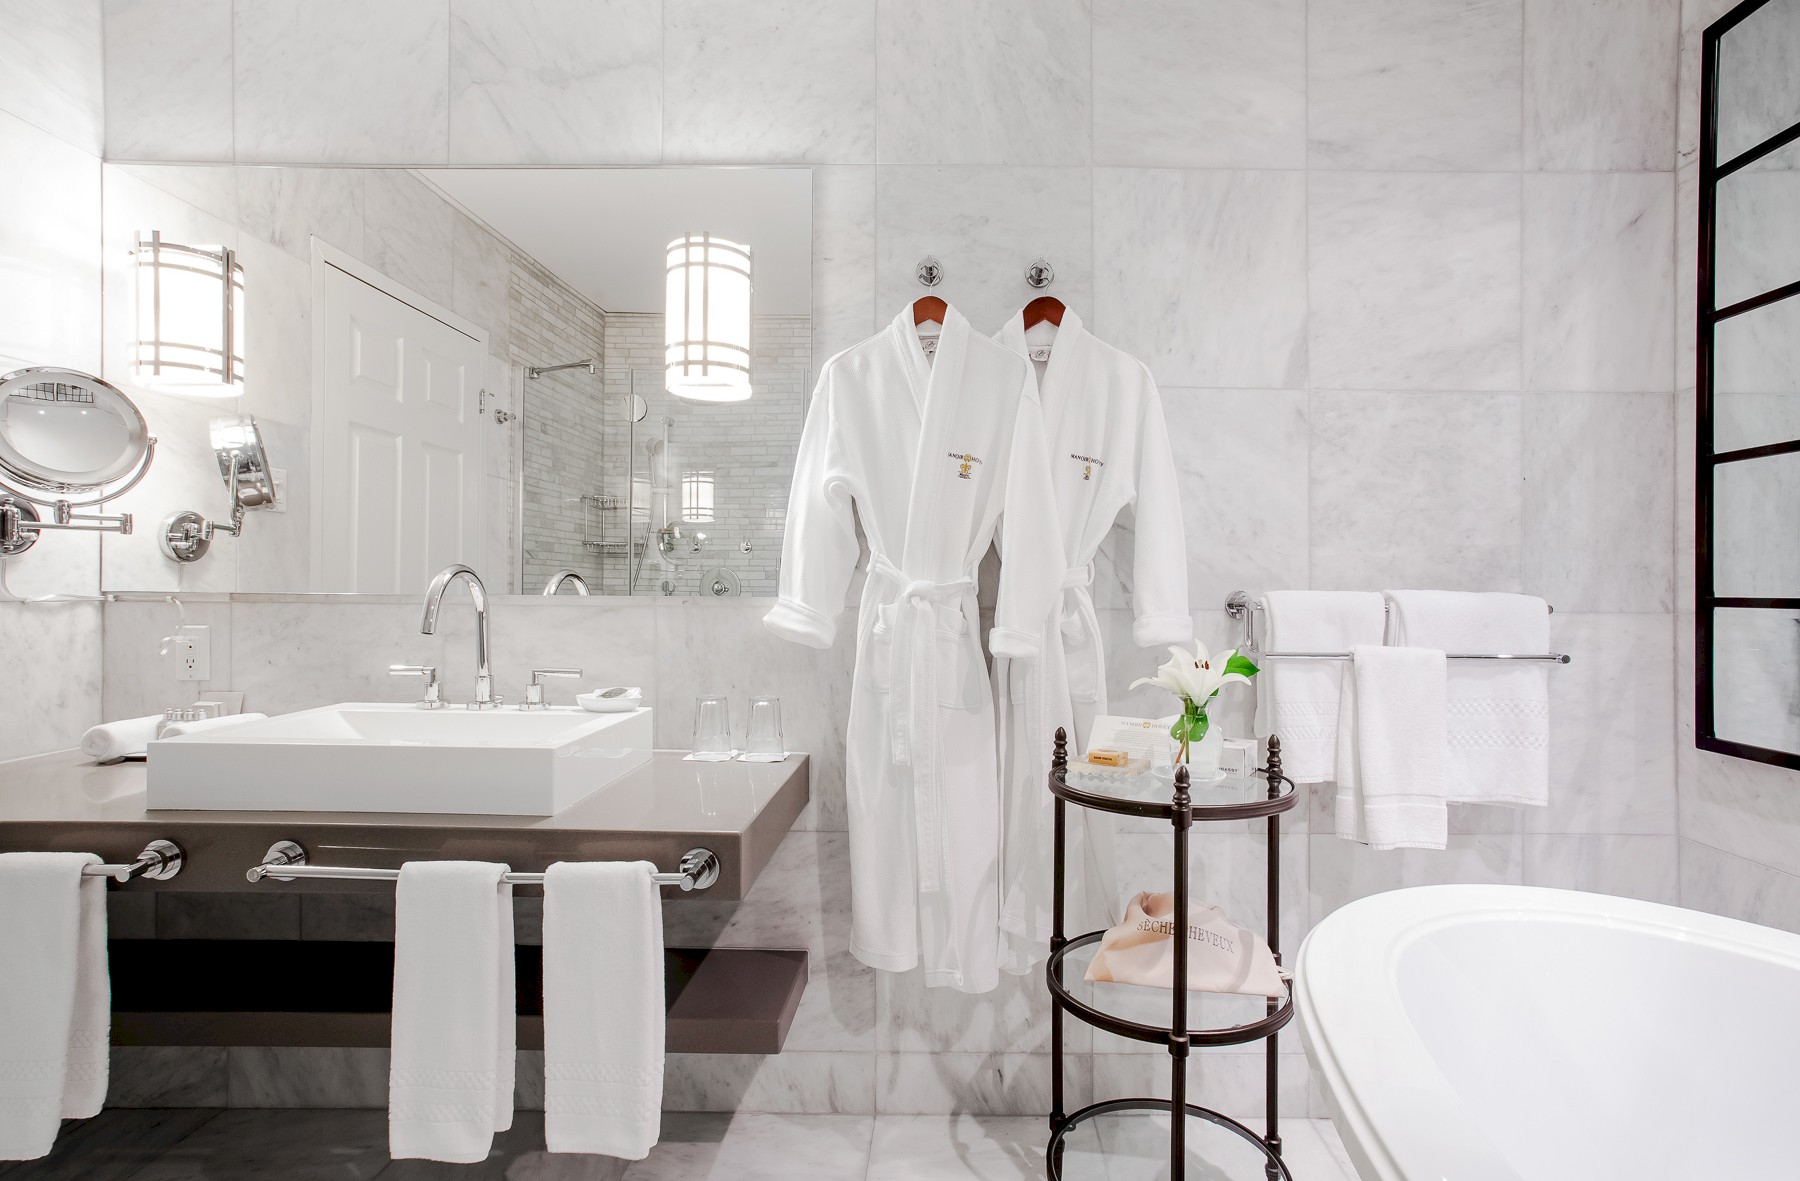 Salle de bain en marbre blanc avec des peignoirs